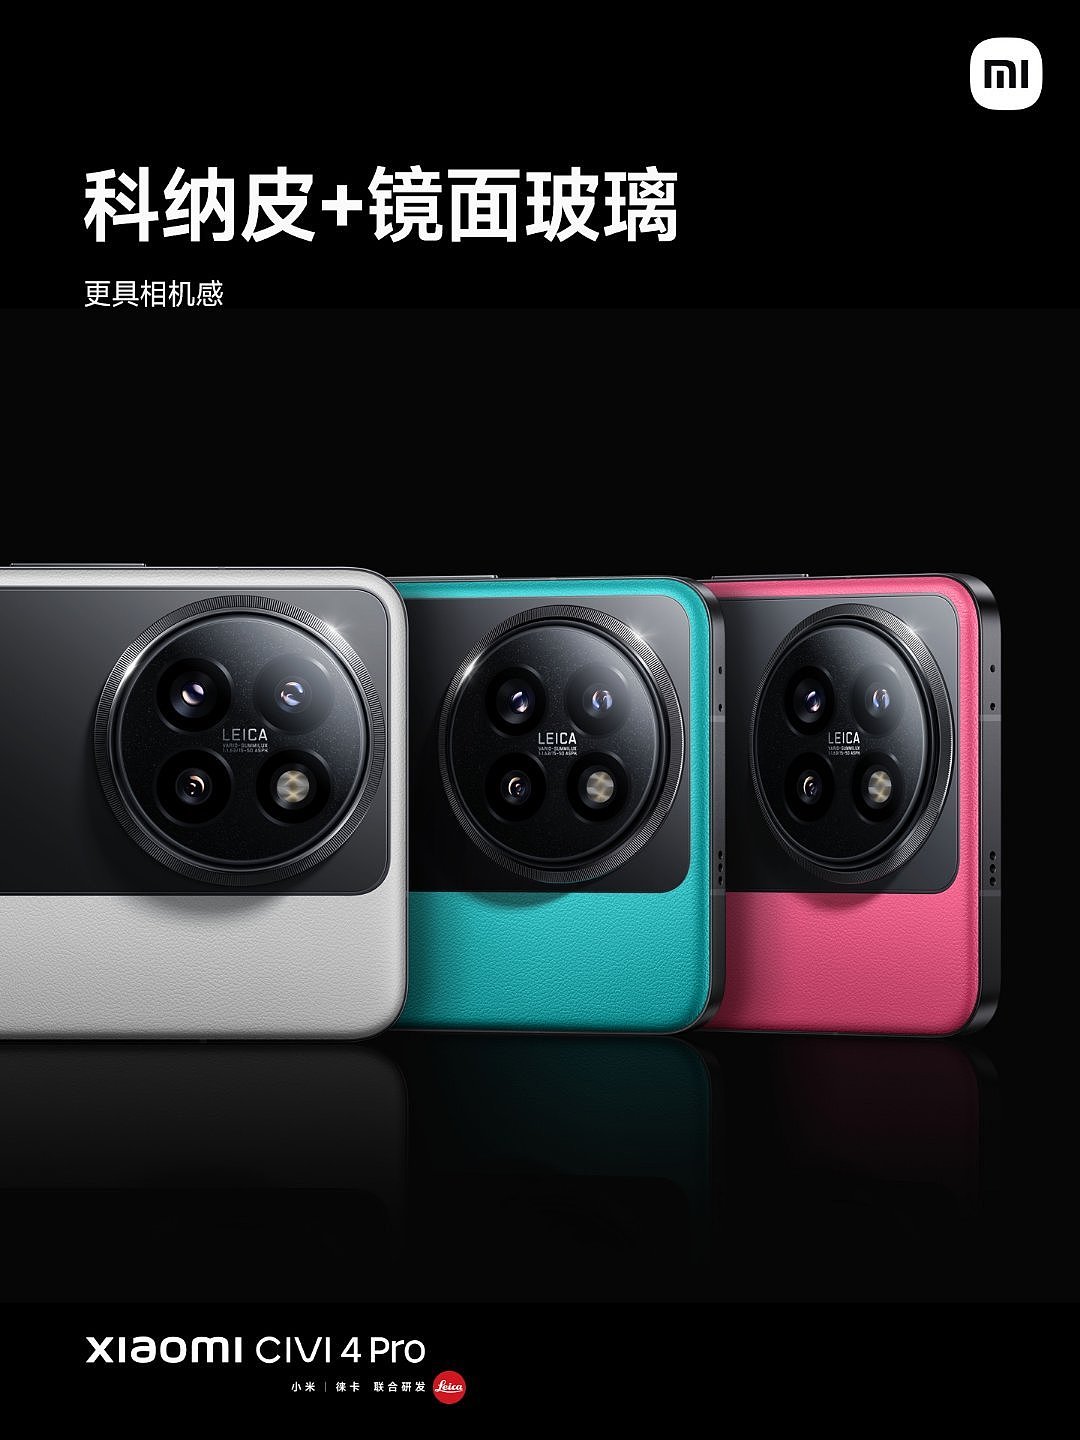 3599 元，小米 Civi 4 Pro 限量定制色手机今日开售：采用撞色设计 - 1